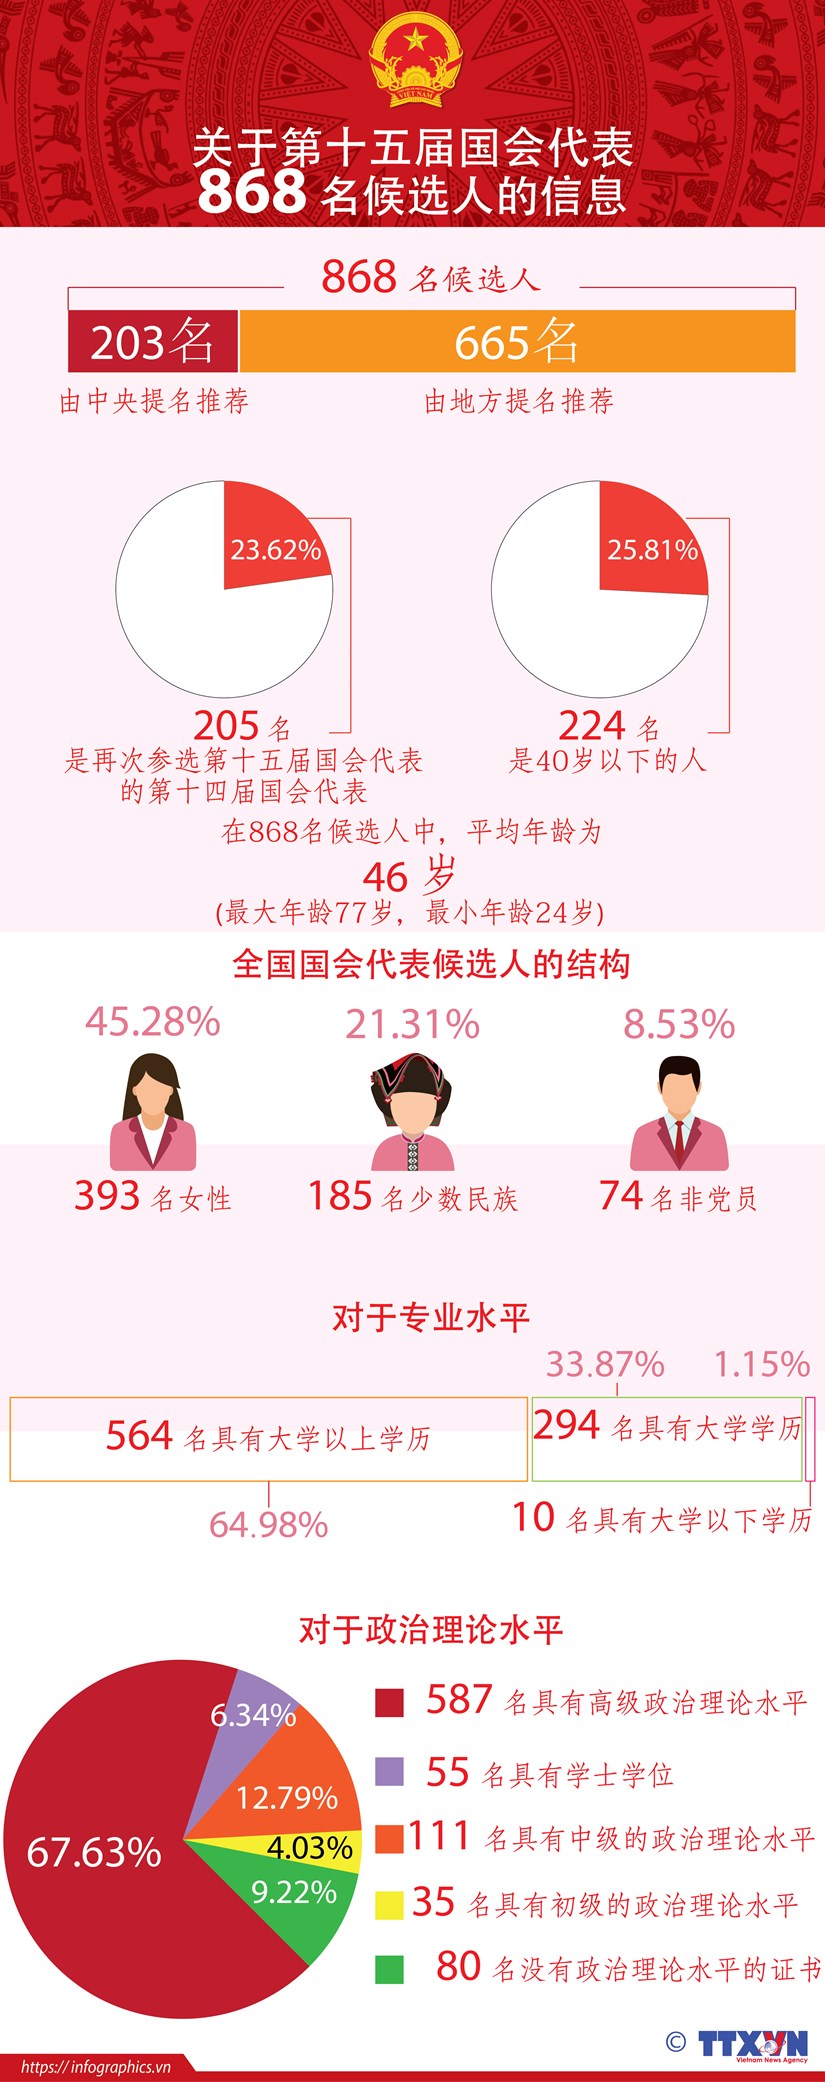 图表新闻：关于第十五届国会代表868名候选人的信息 hinh anh 1